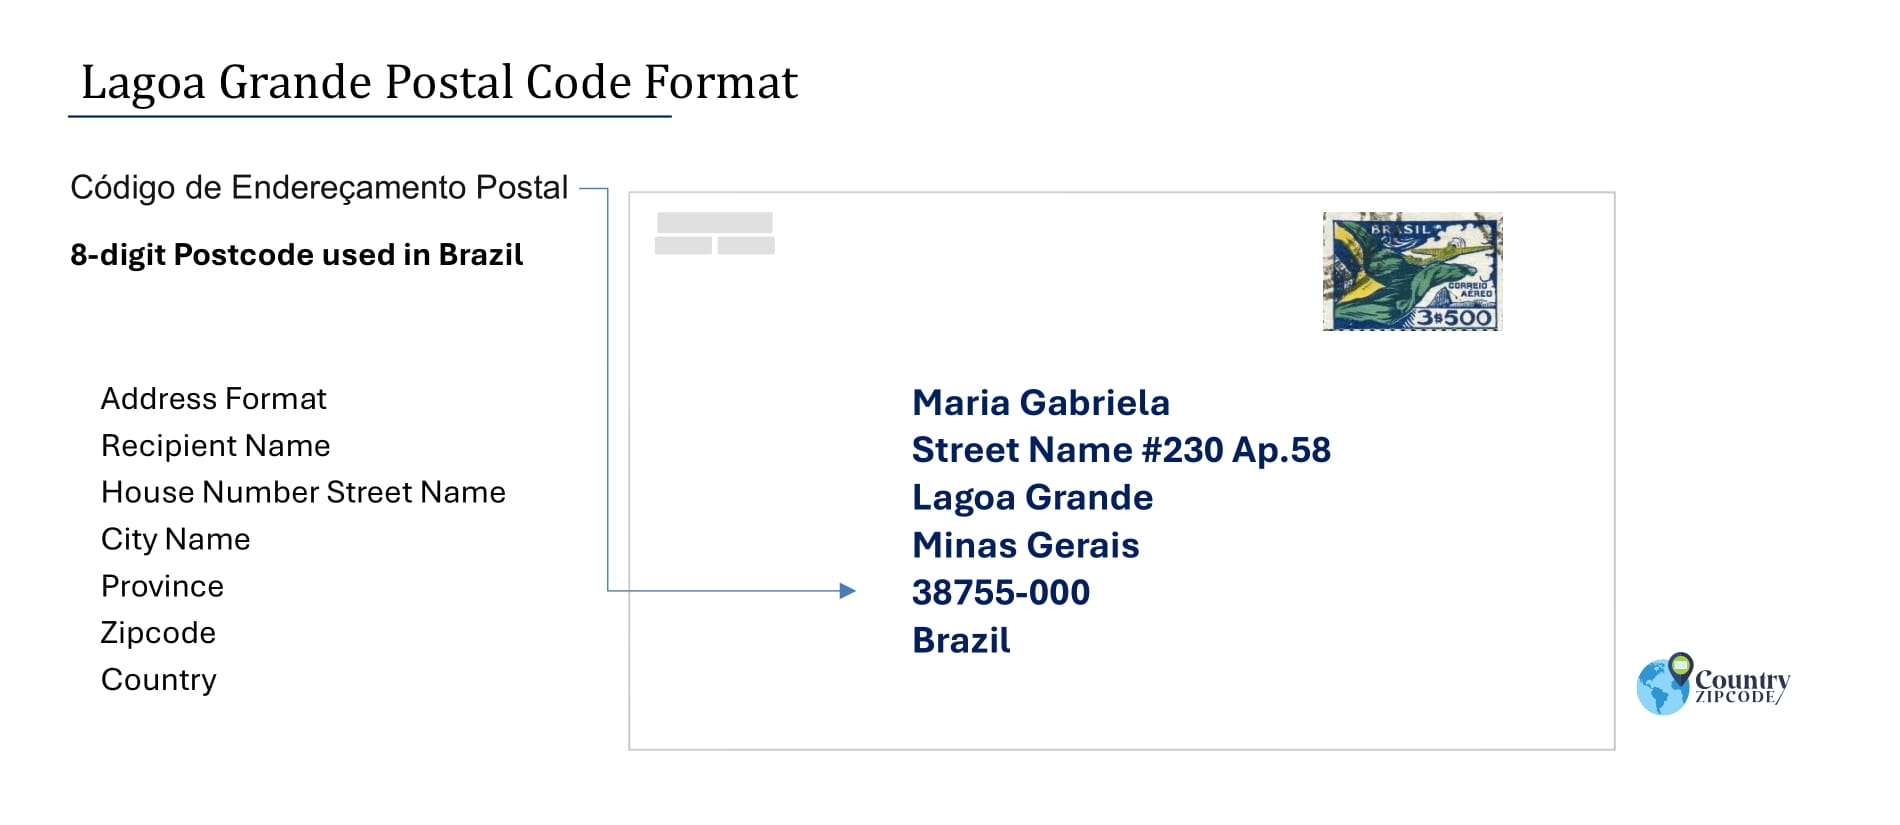 Example of Codigo de Enderecamento Postal and Address format of Lagoa Grande Minas Gerais Brazil